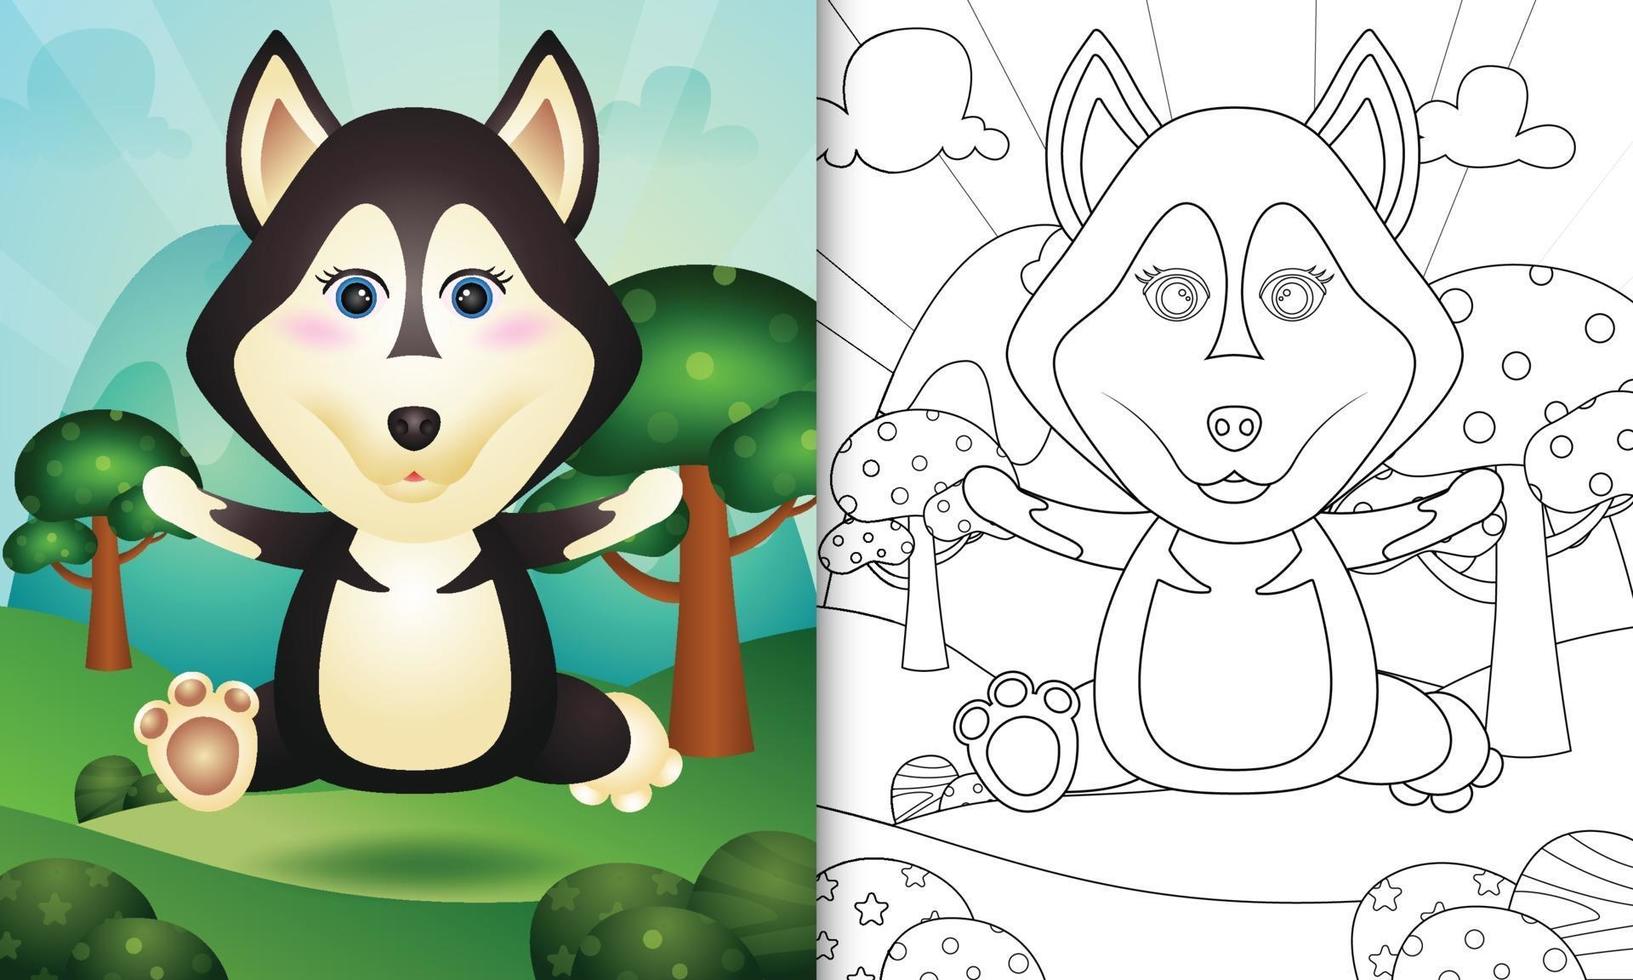 modèle de livre de coloriage pour les enfants avec une illustration de personnage de chien husky mignon vecteur